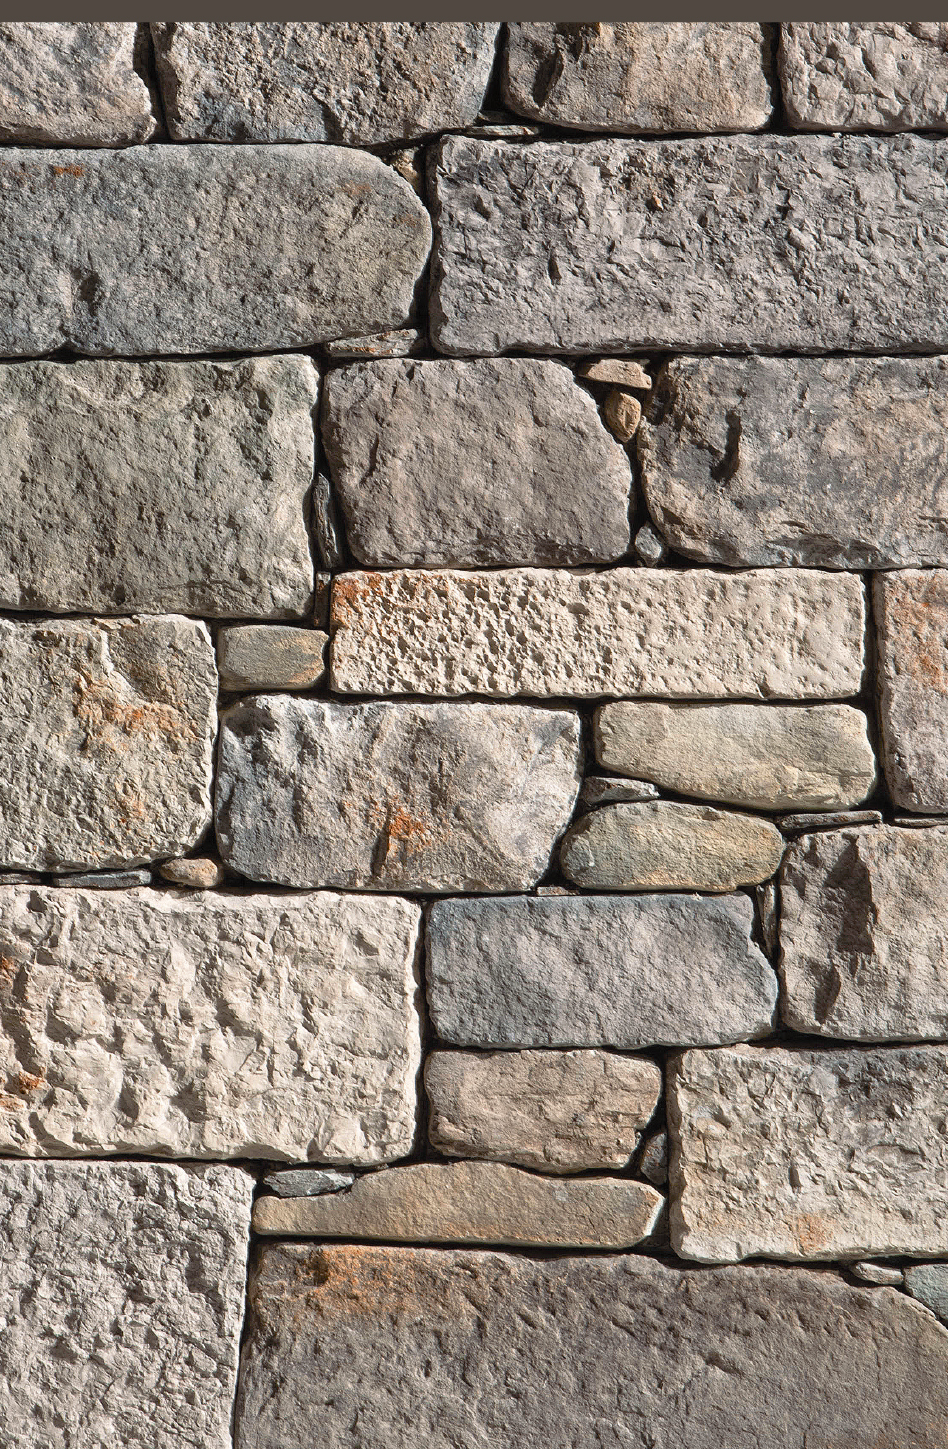 muro in pietra